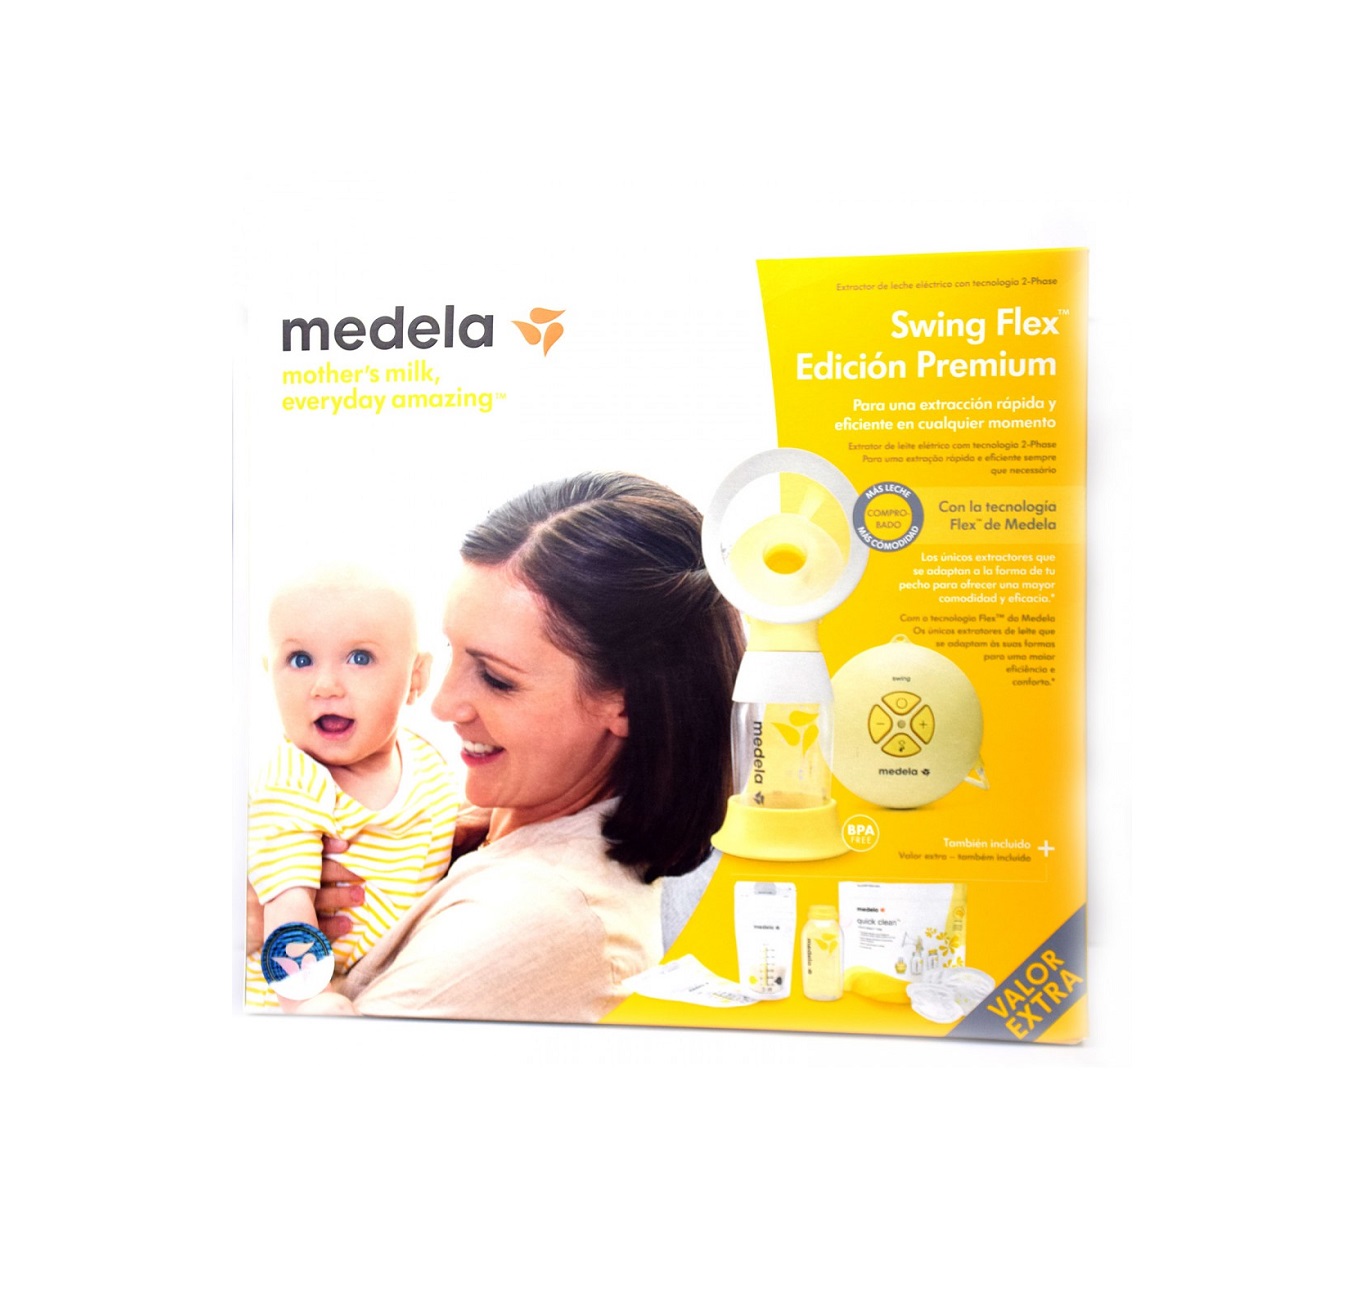 Swing Flex Edición Premium - Medela